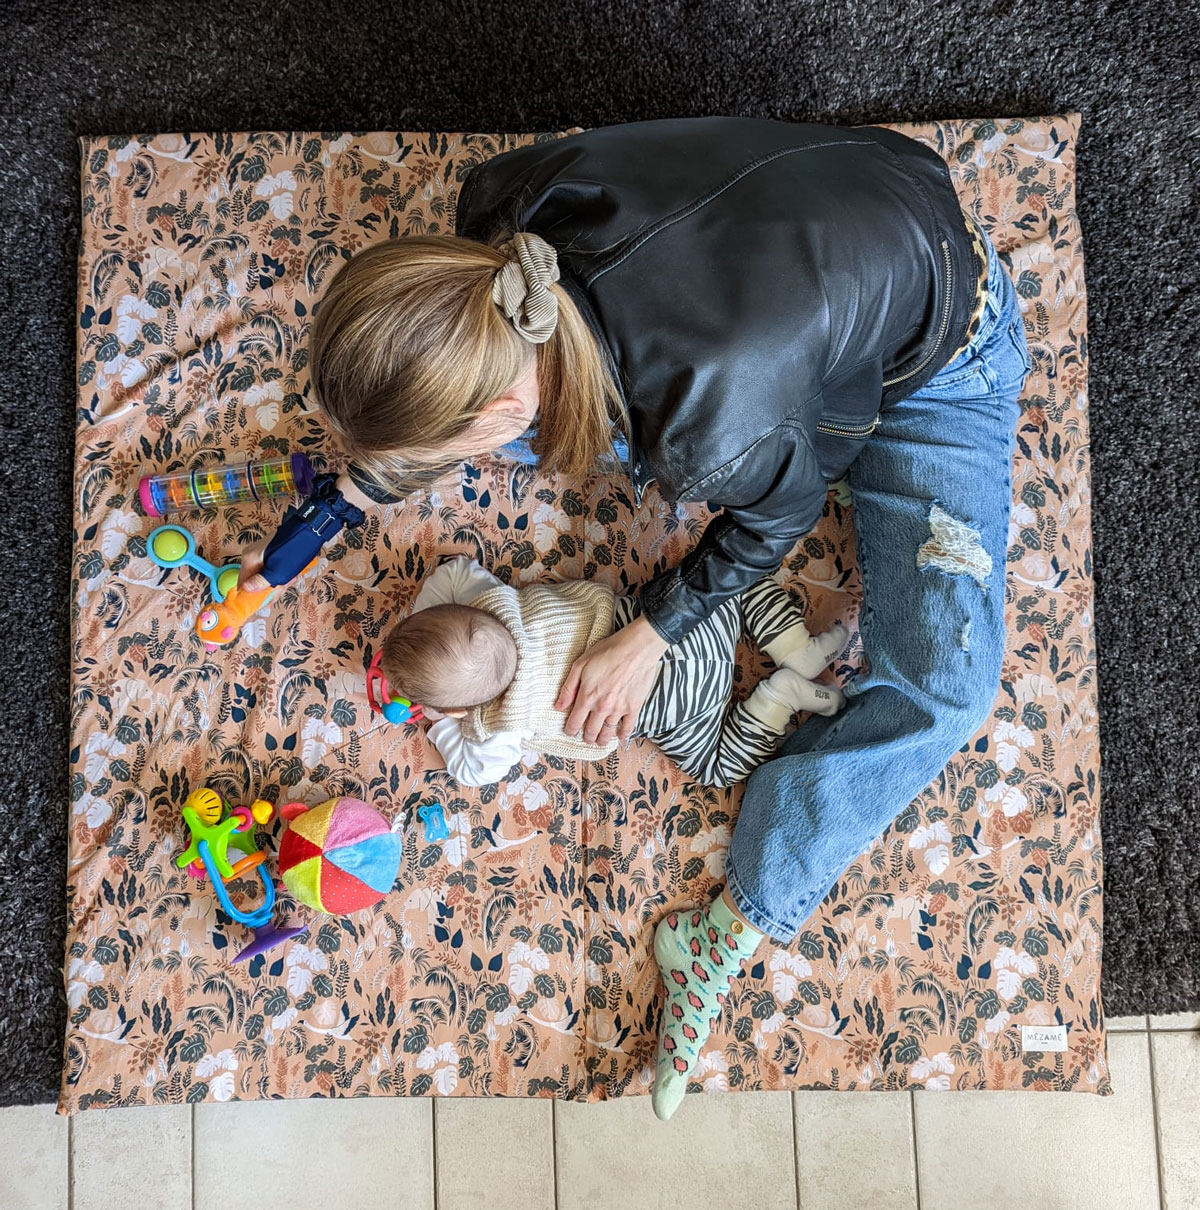 Le guide ultime pour choisir le meilleur tapis de motricité pour votre bébé  - Rouler & Bouler - Le tapis d'éveil et de motricité pour bébé